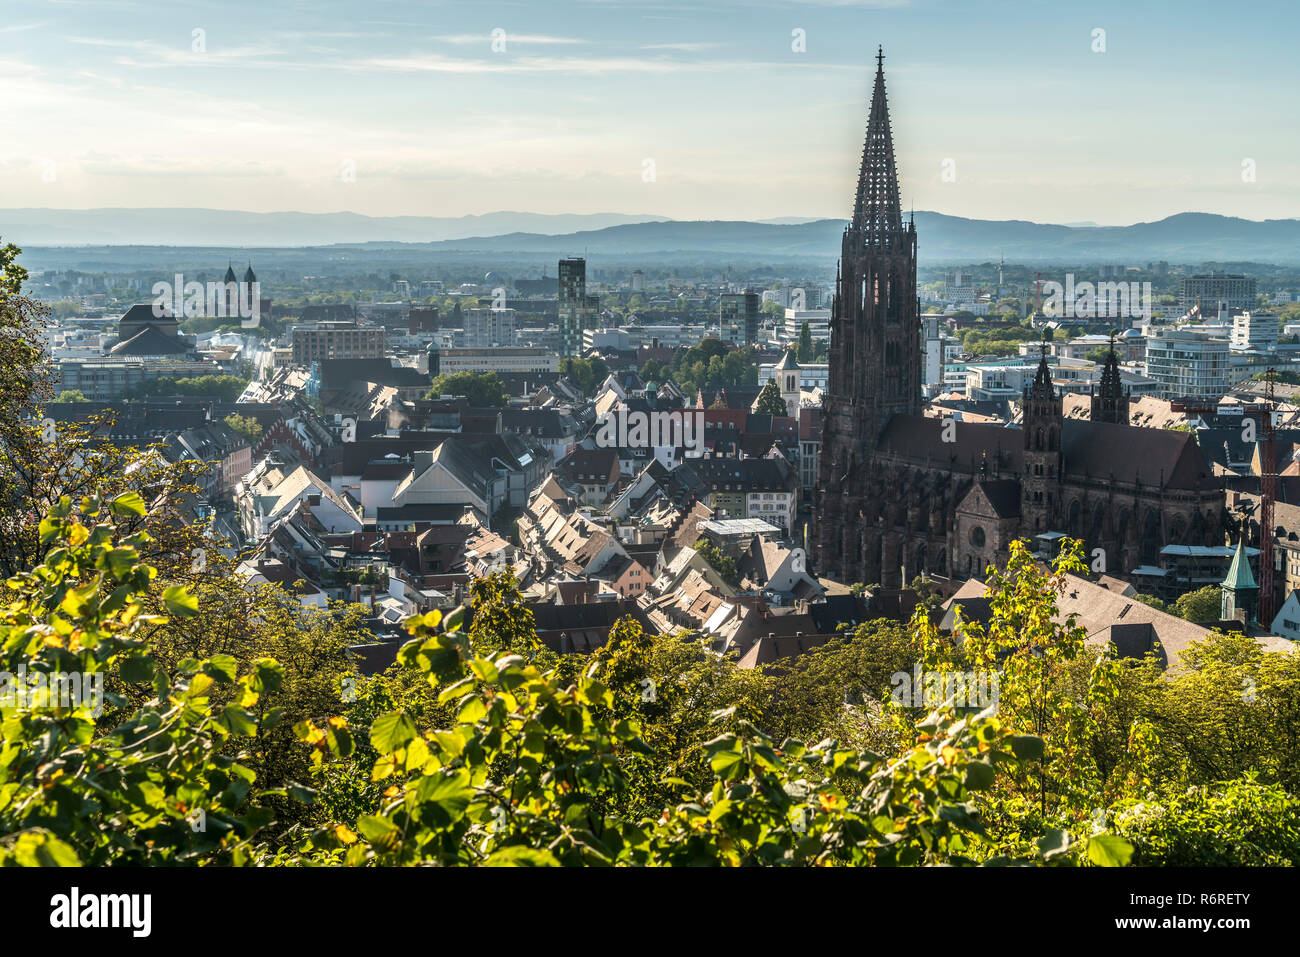 Stadtansicht und Freiburger Münster, Freiburg im Breisgau, Schwarzwald, Baden-Württemberg, Deutschland |  Cityscape with Freiburg Cathedral, Freiburg  Stock Photo